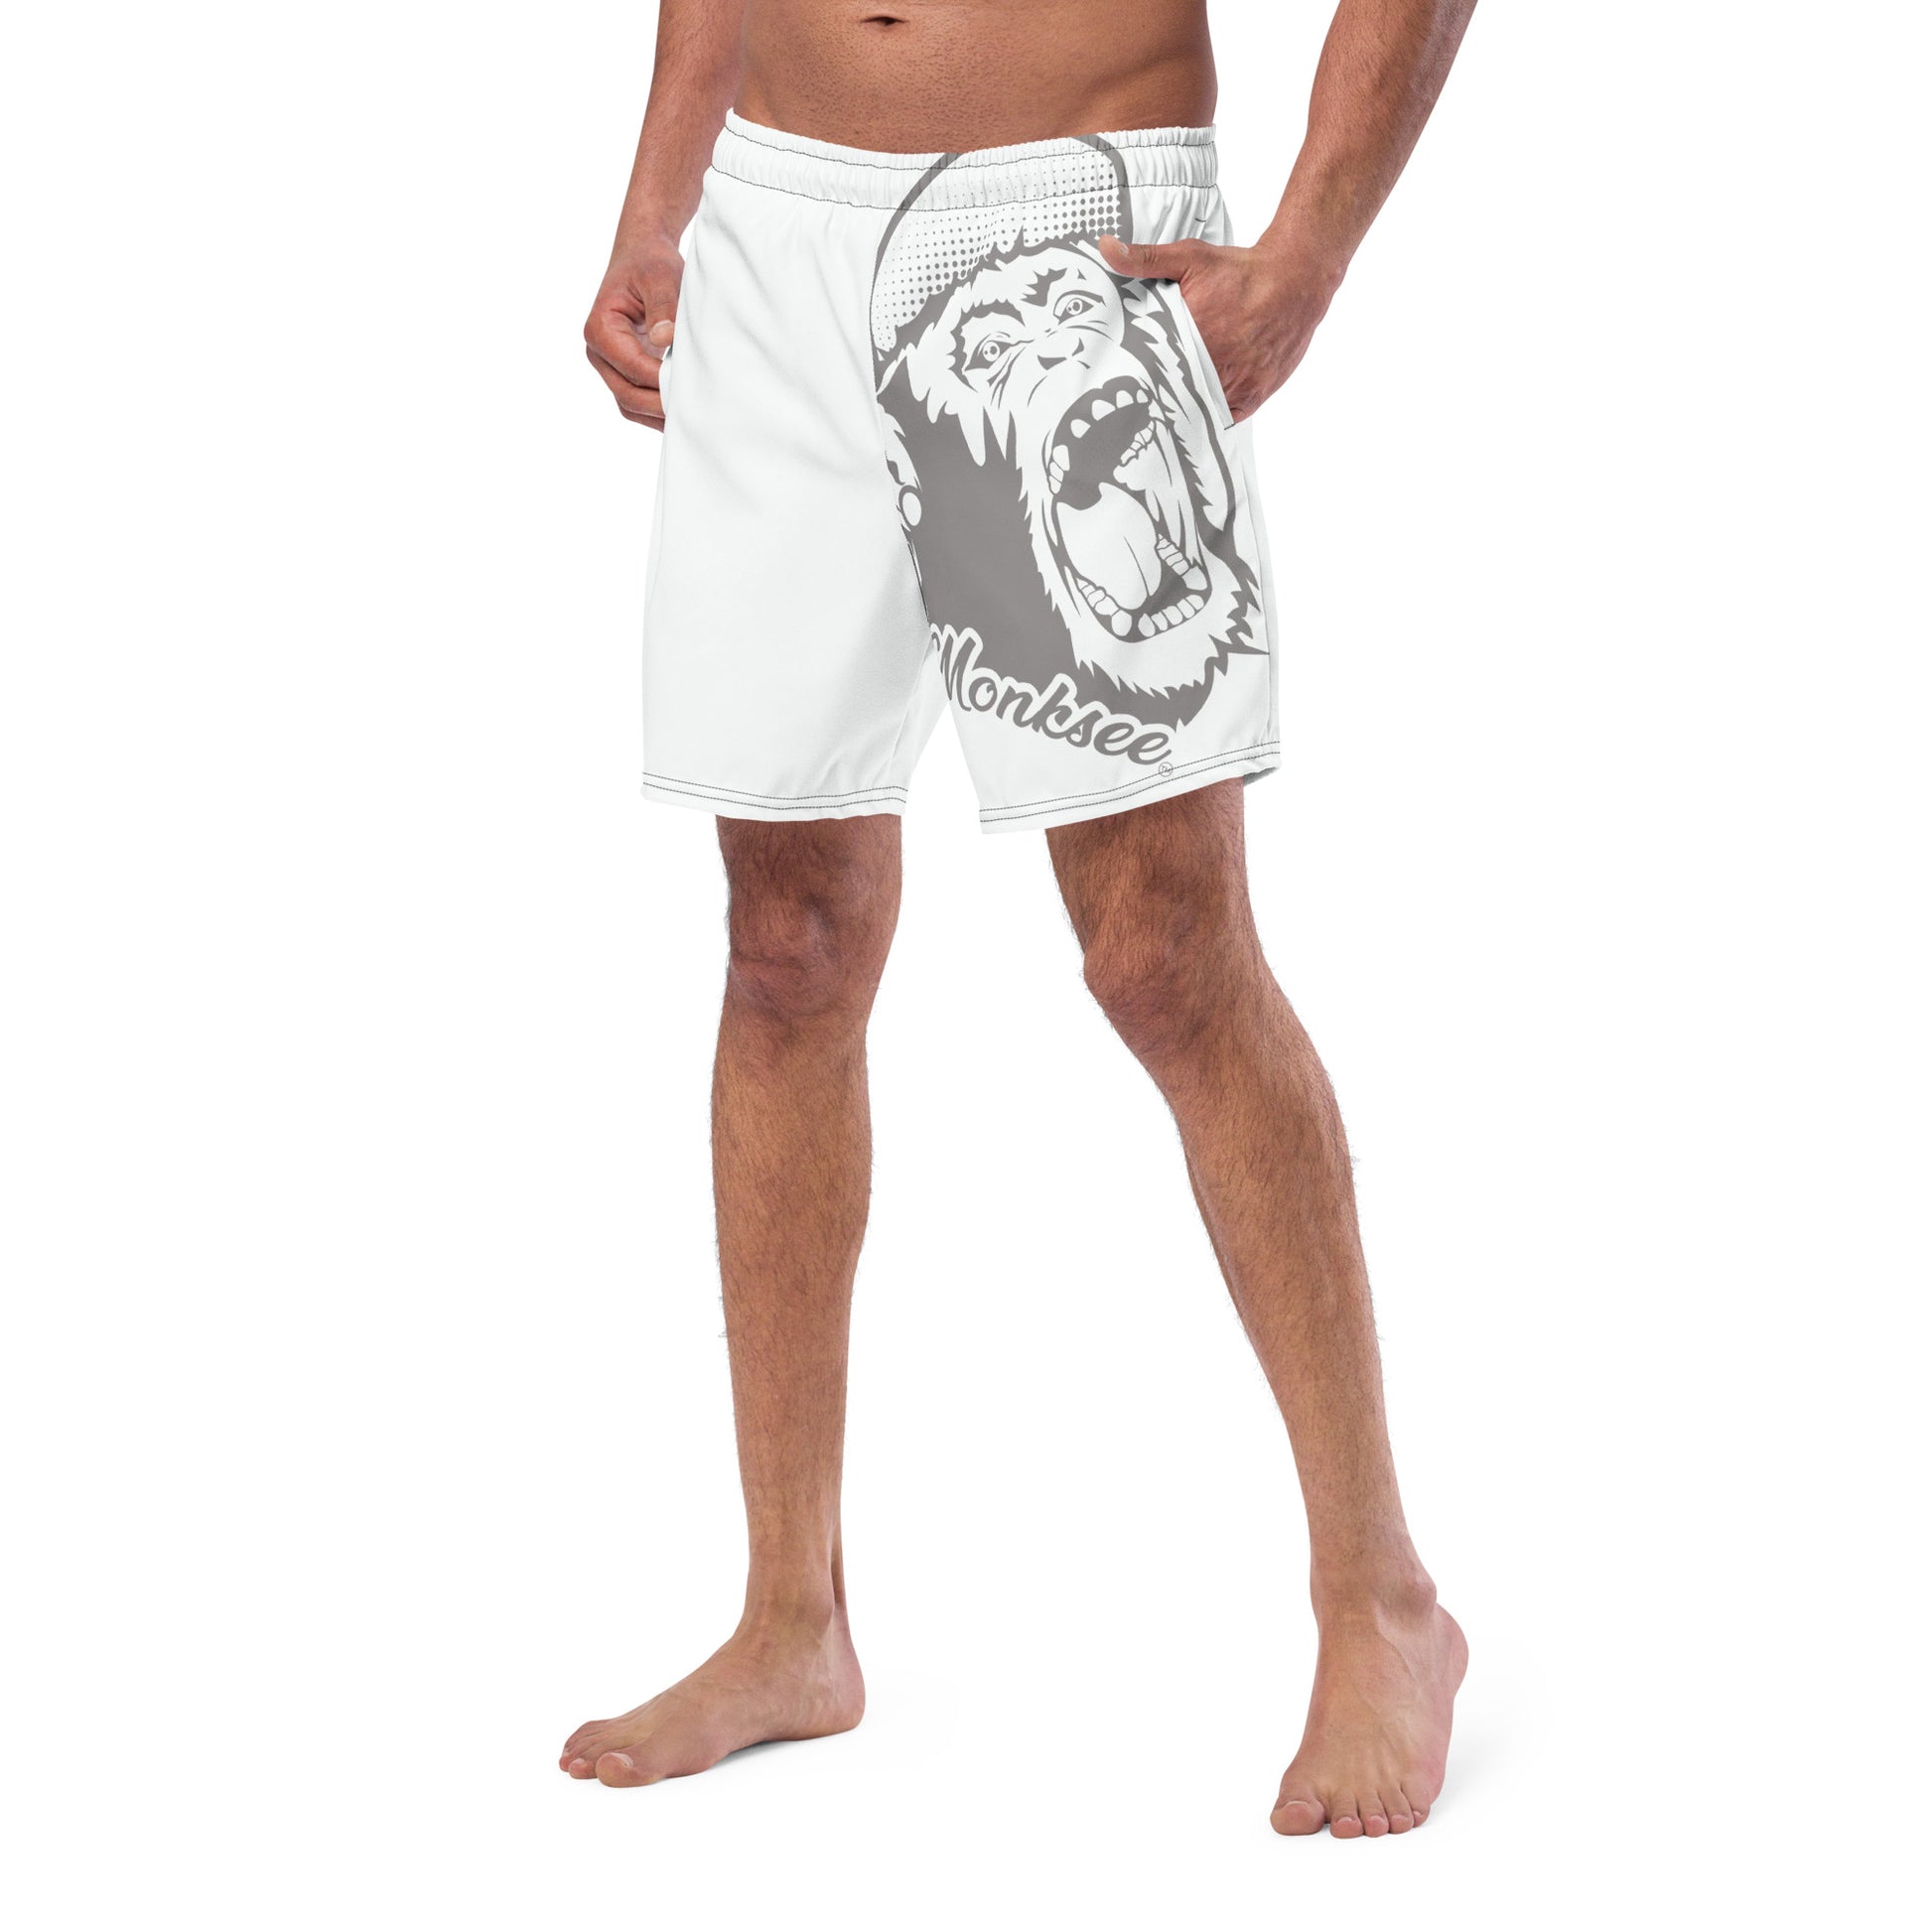 Monksee Face - Mens Board shorts.